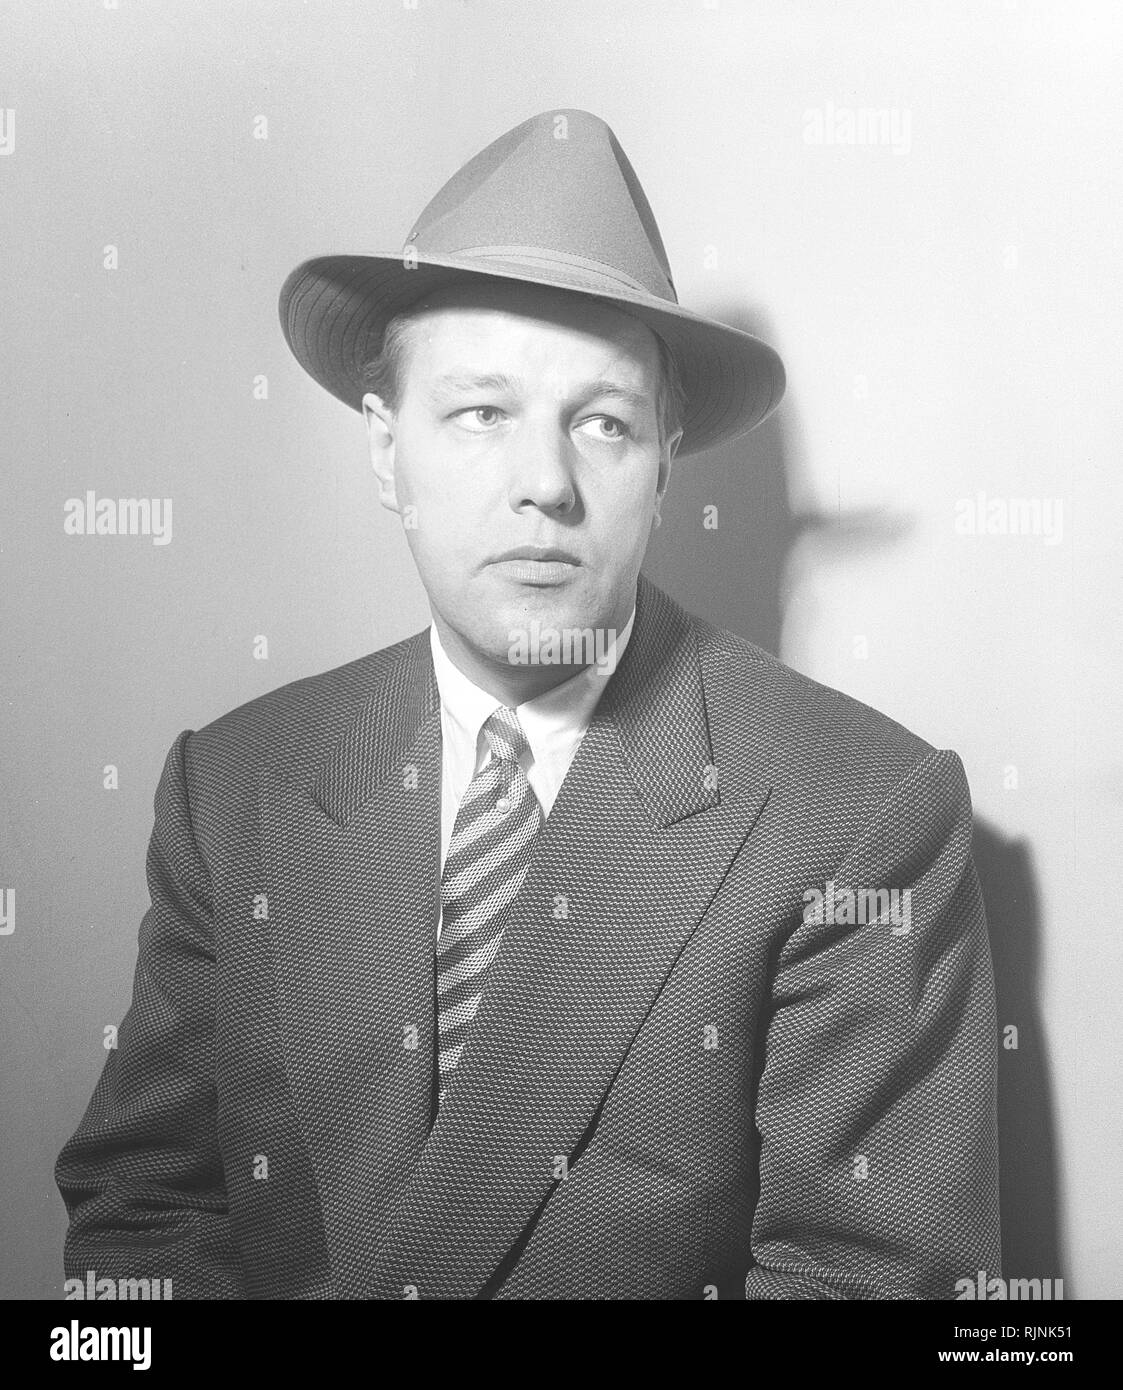 Hat la mode dans les années 1950. Un homme en costume et cravate porte un  chapeau type Fedora. Un bord souple et froissé généralement  longitudinalement, et pincé près de l'avant des deux